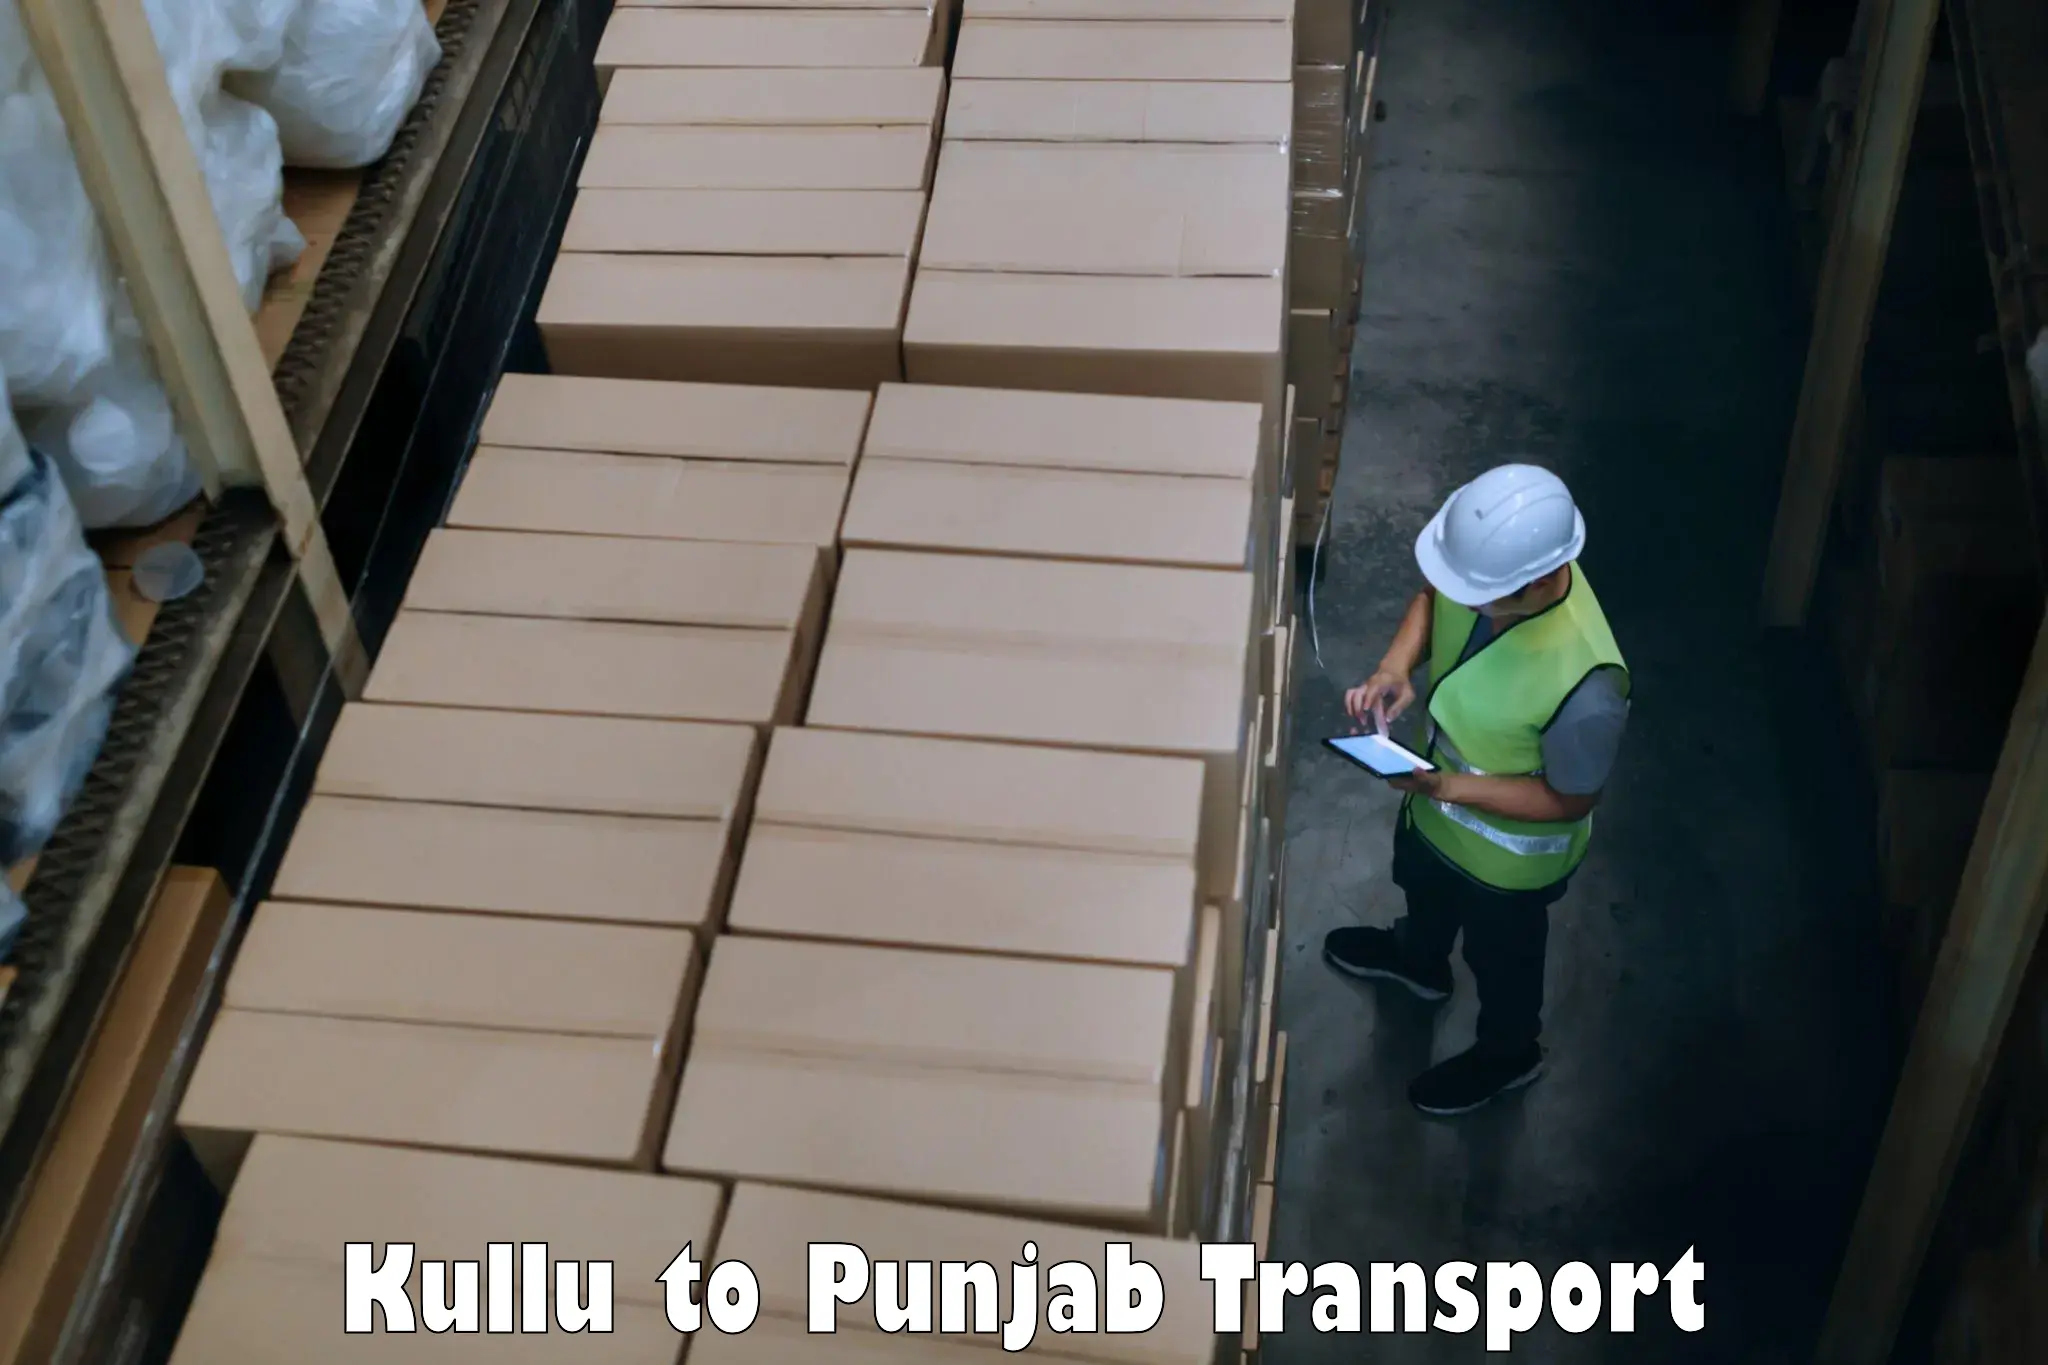 Cycle transportation service Kullu to Phillaur